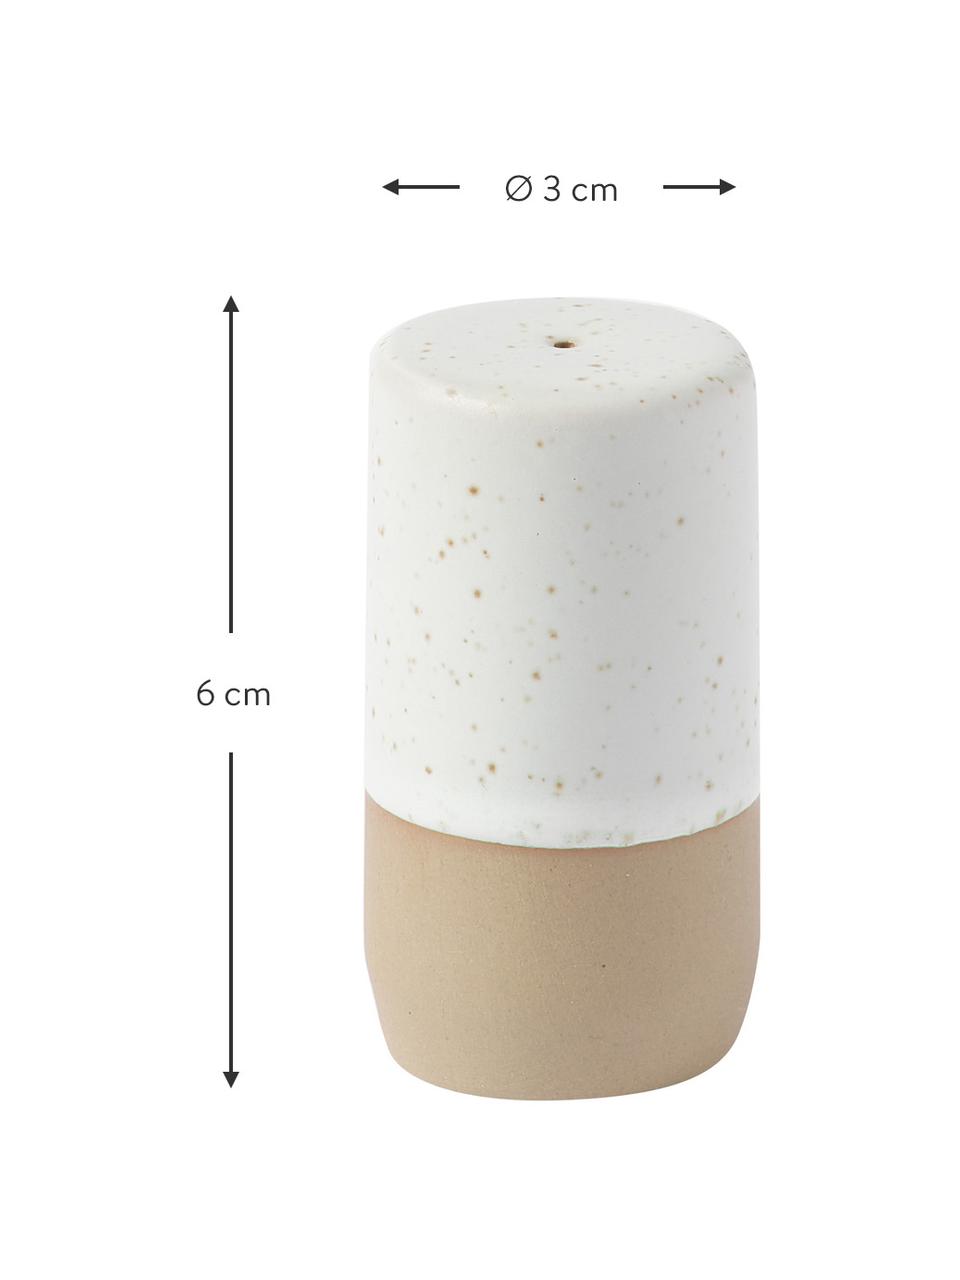 Komplet solniczki i pieprzniczki Caja, 2 elem., Kamionka, Beżowy, kremowobiały, Ø 3 cm, W 6 cm